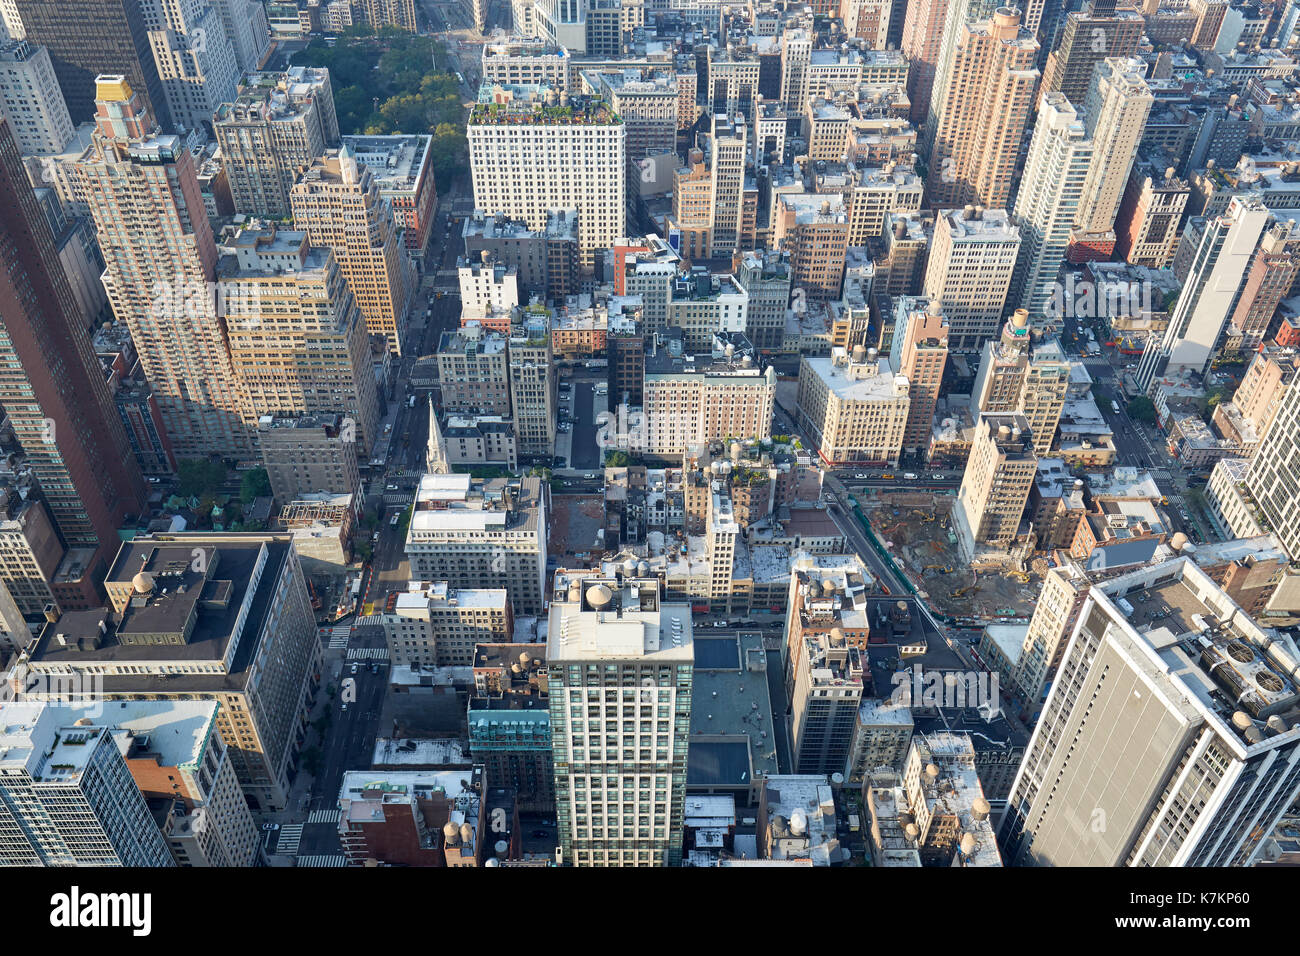 La ville de New York, Manhattan vue aérienne avec des gratte-ciel et la 5ème avenue Banque D'Images